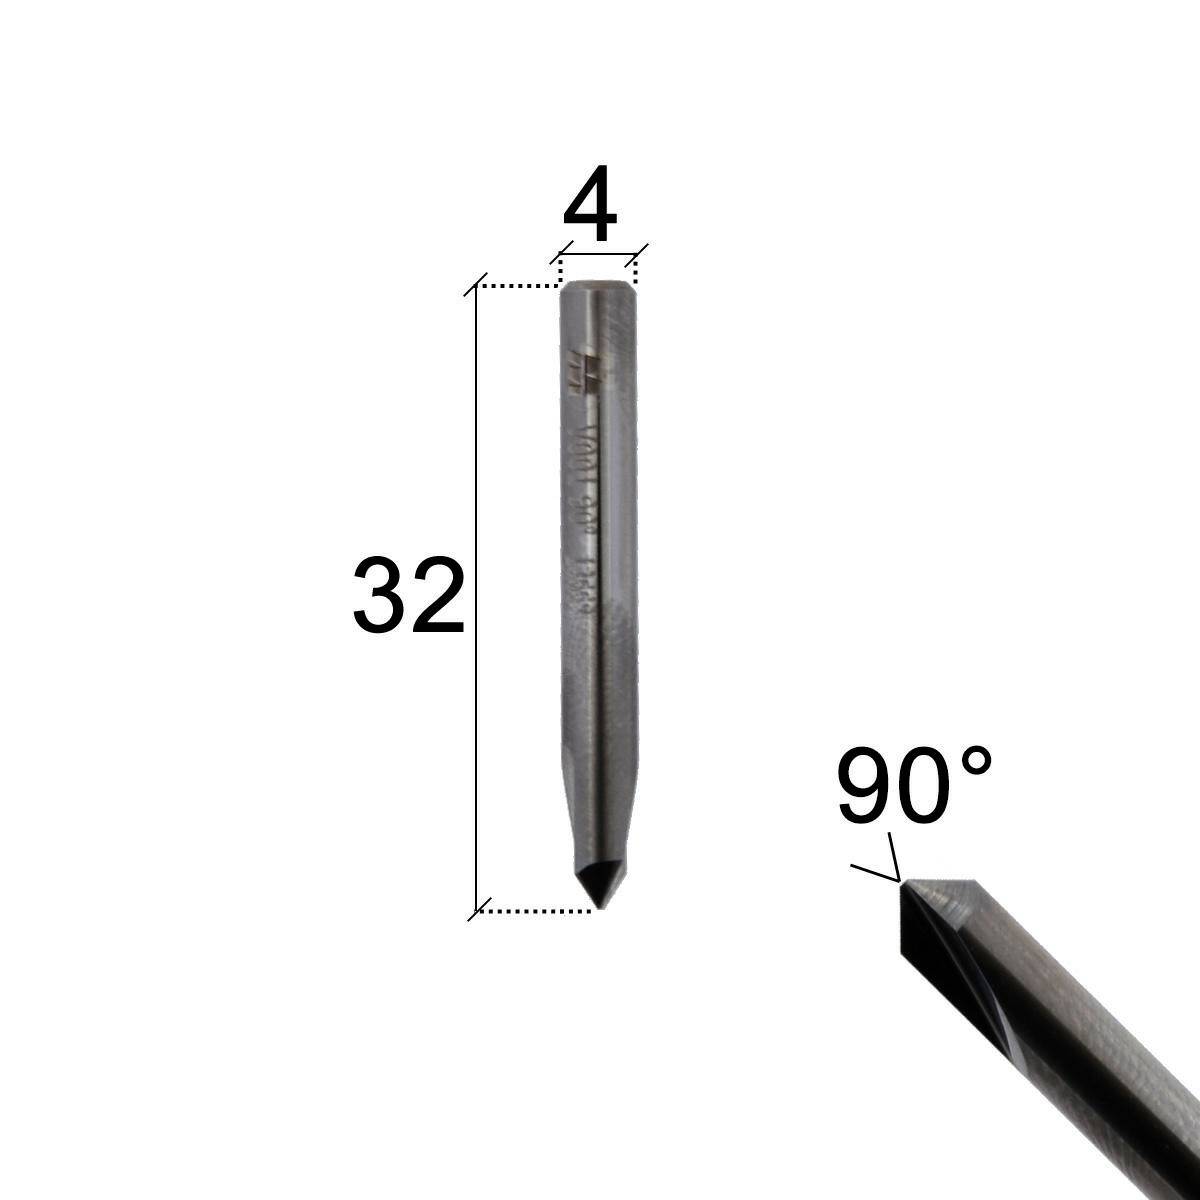 Finger cutter V001 - high temperature resistant